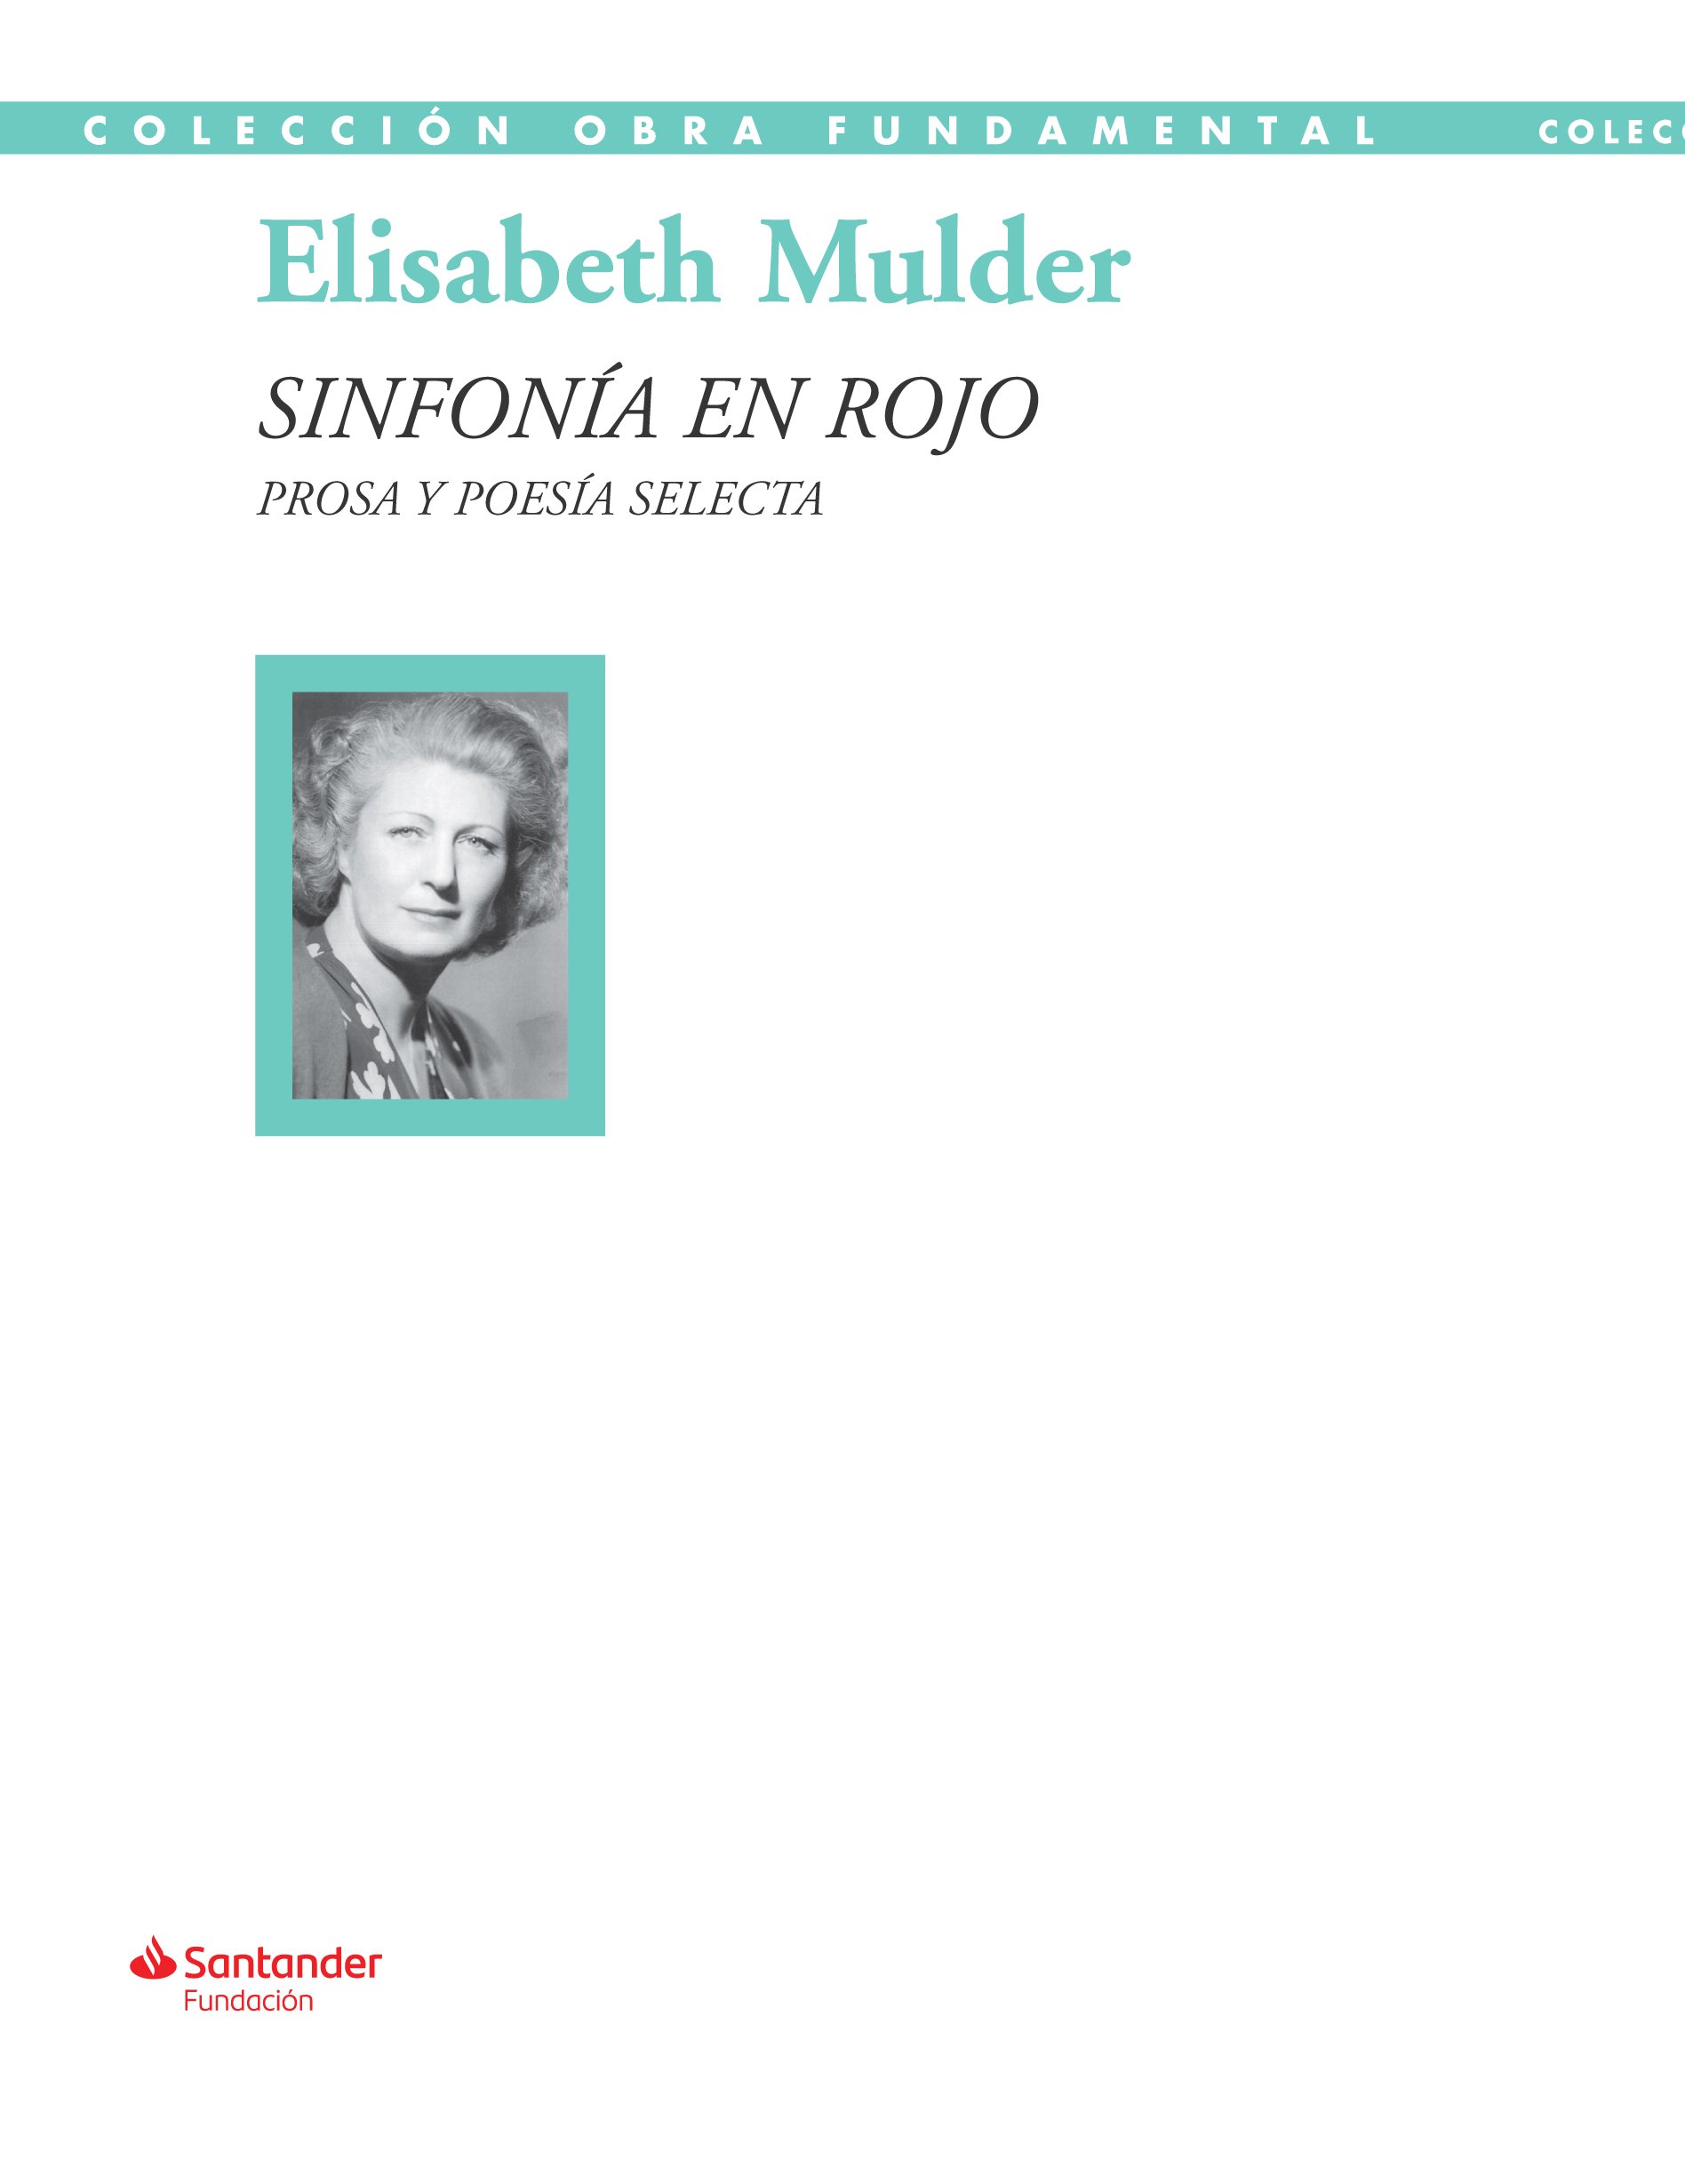 Elisabeth Mulder. 'Sinfonía en rojo'. Santander Fundación, 476 p., 20 €.